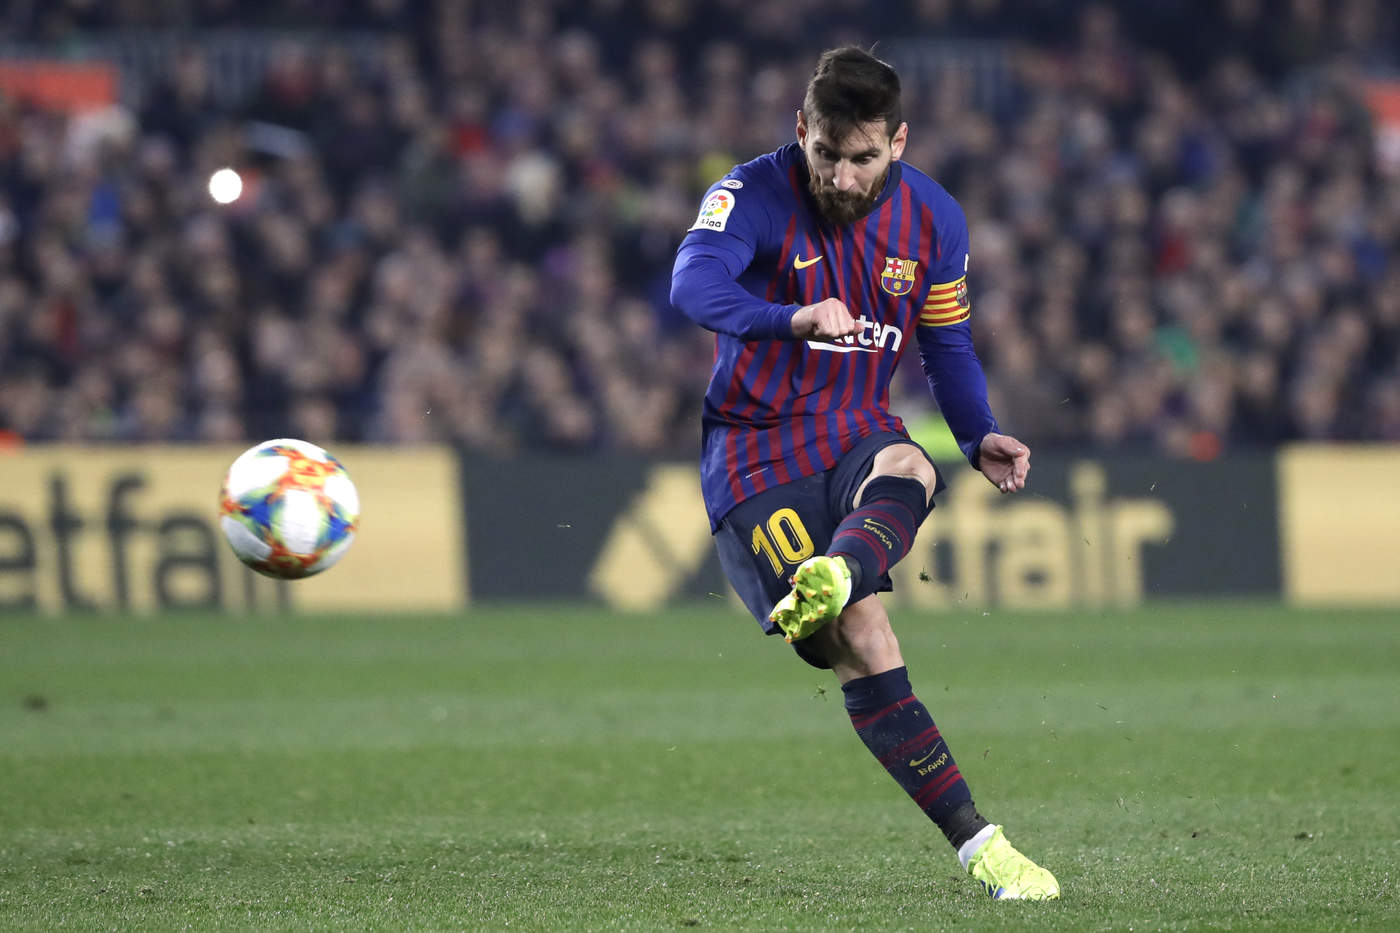 El astro argentino Lionel Messi entró de cambio en la segunda mitad, pero no pudo hacerse presente en el marcador. (AP)